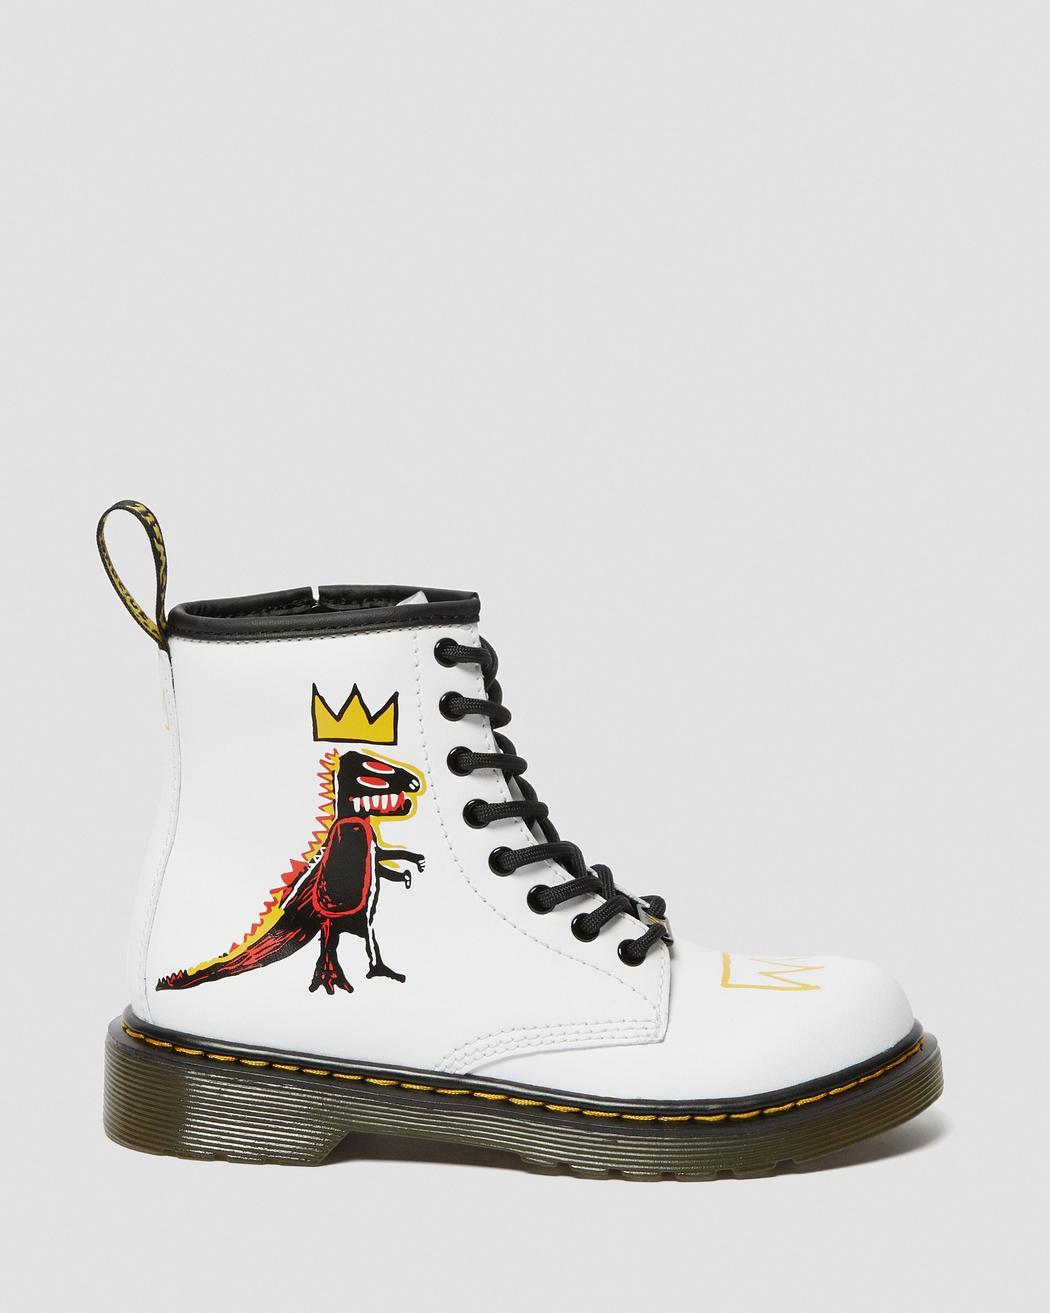 Schoenen Meisjesschoenen Laarzen Dr Martens amfibieënkind Jean Michel Basquiat limited edition witte draak EU 34 